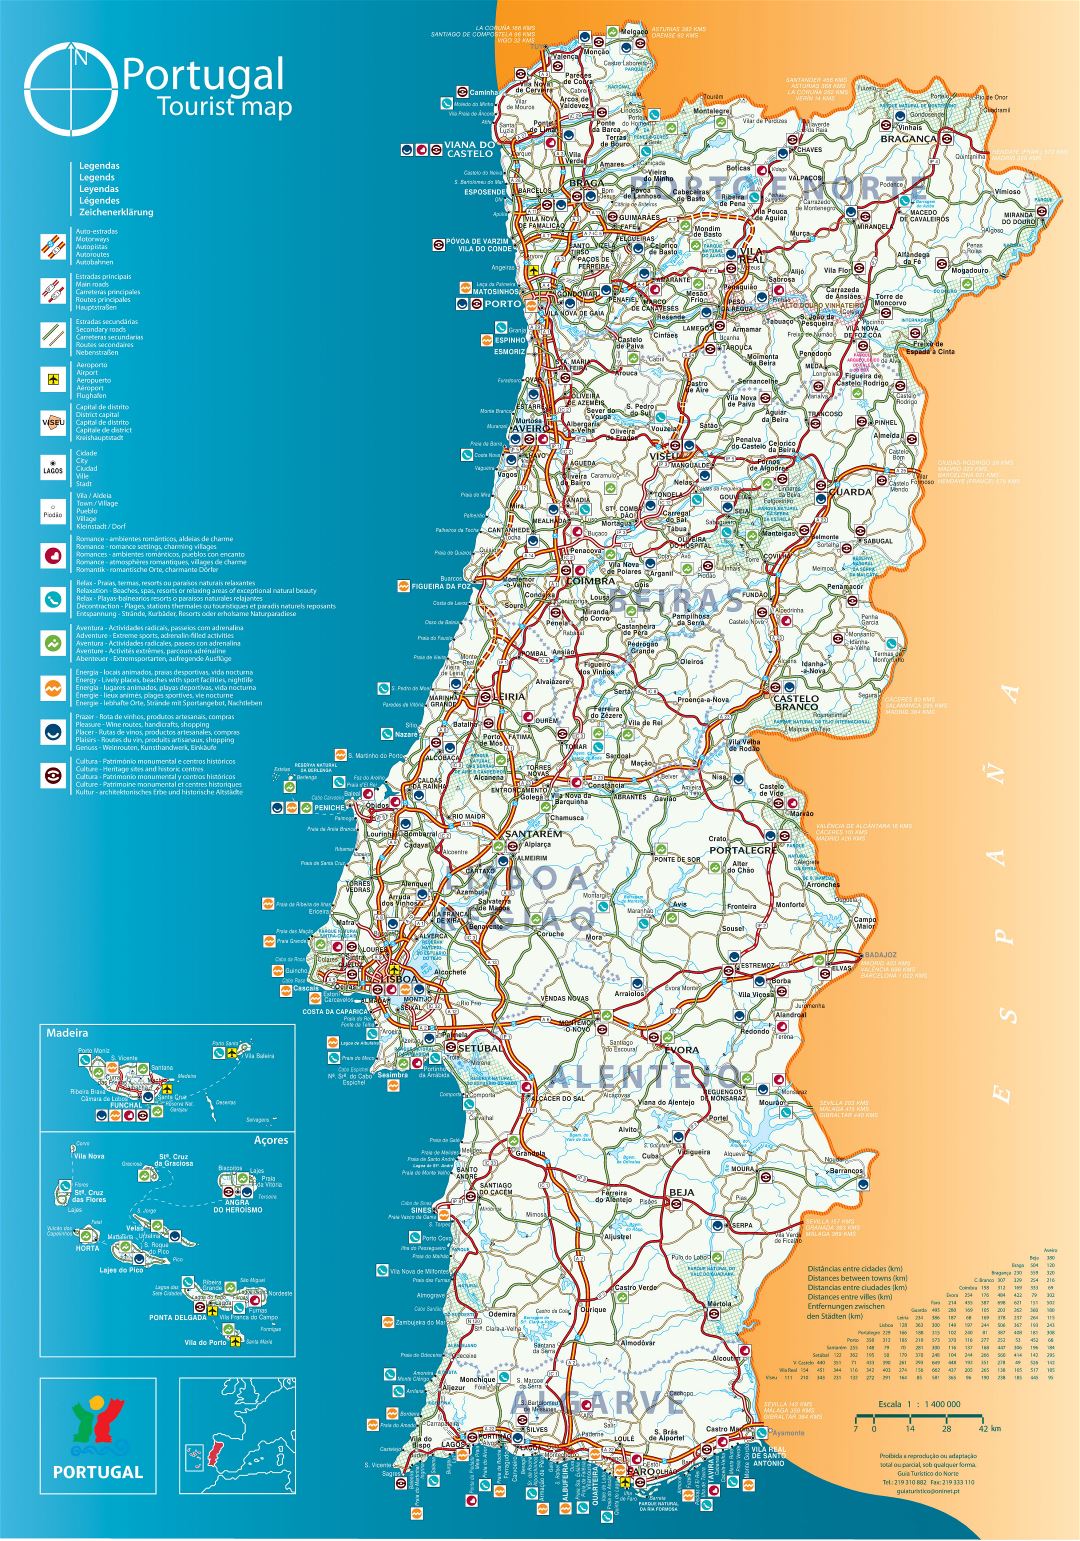 Grande detallado mapa turística de Portugal